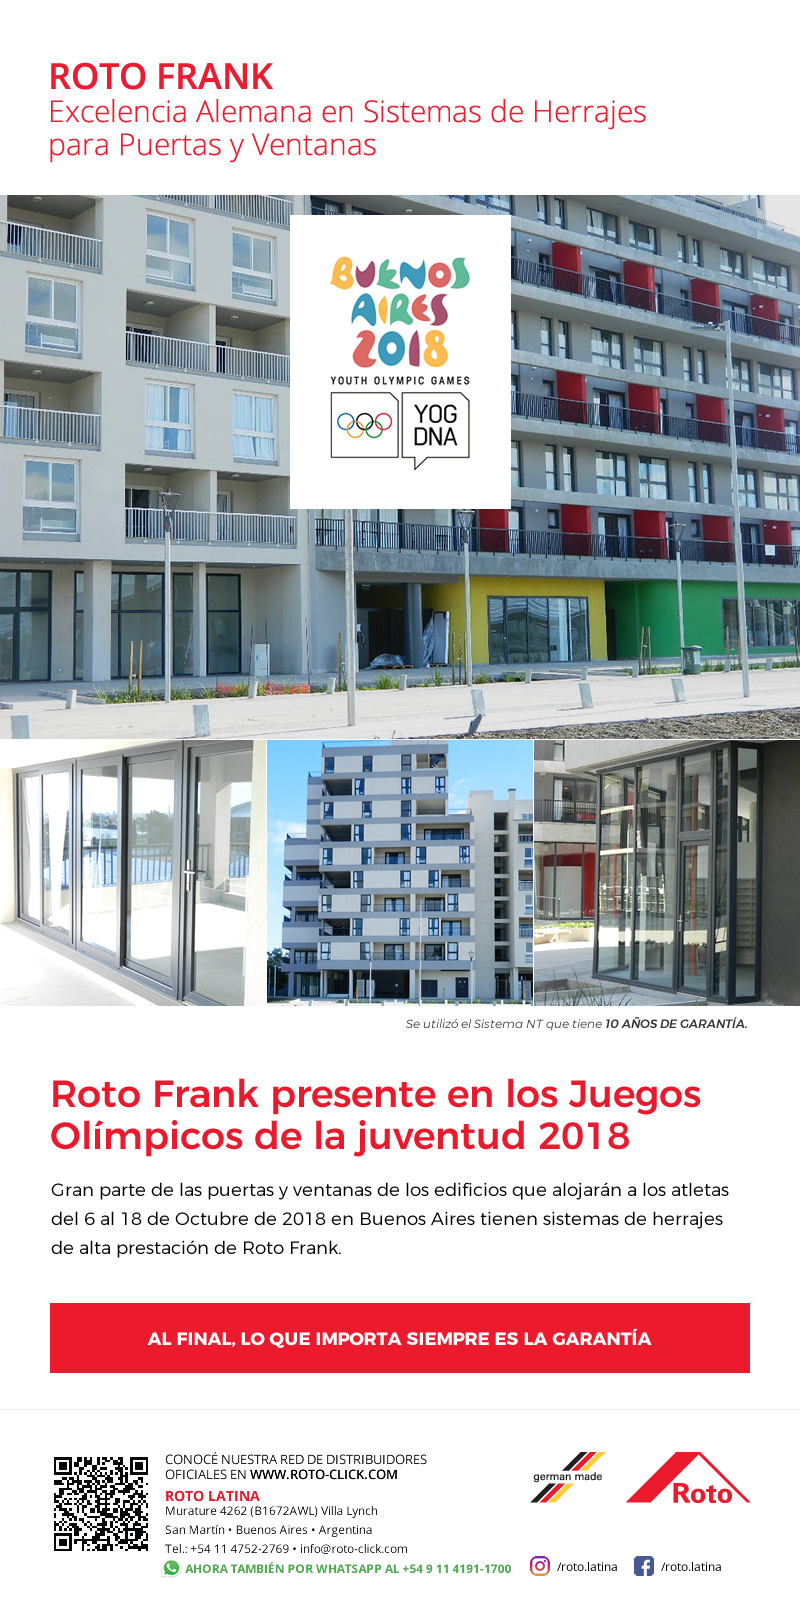 Novedades Agosto 2018 Roto Frank - Roto Frank presente en los Juegos Olimpicos de la Juventud 2018.